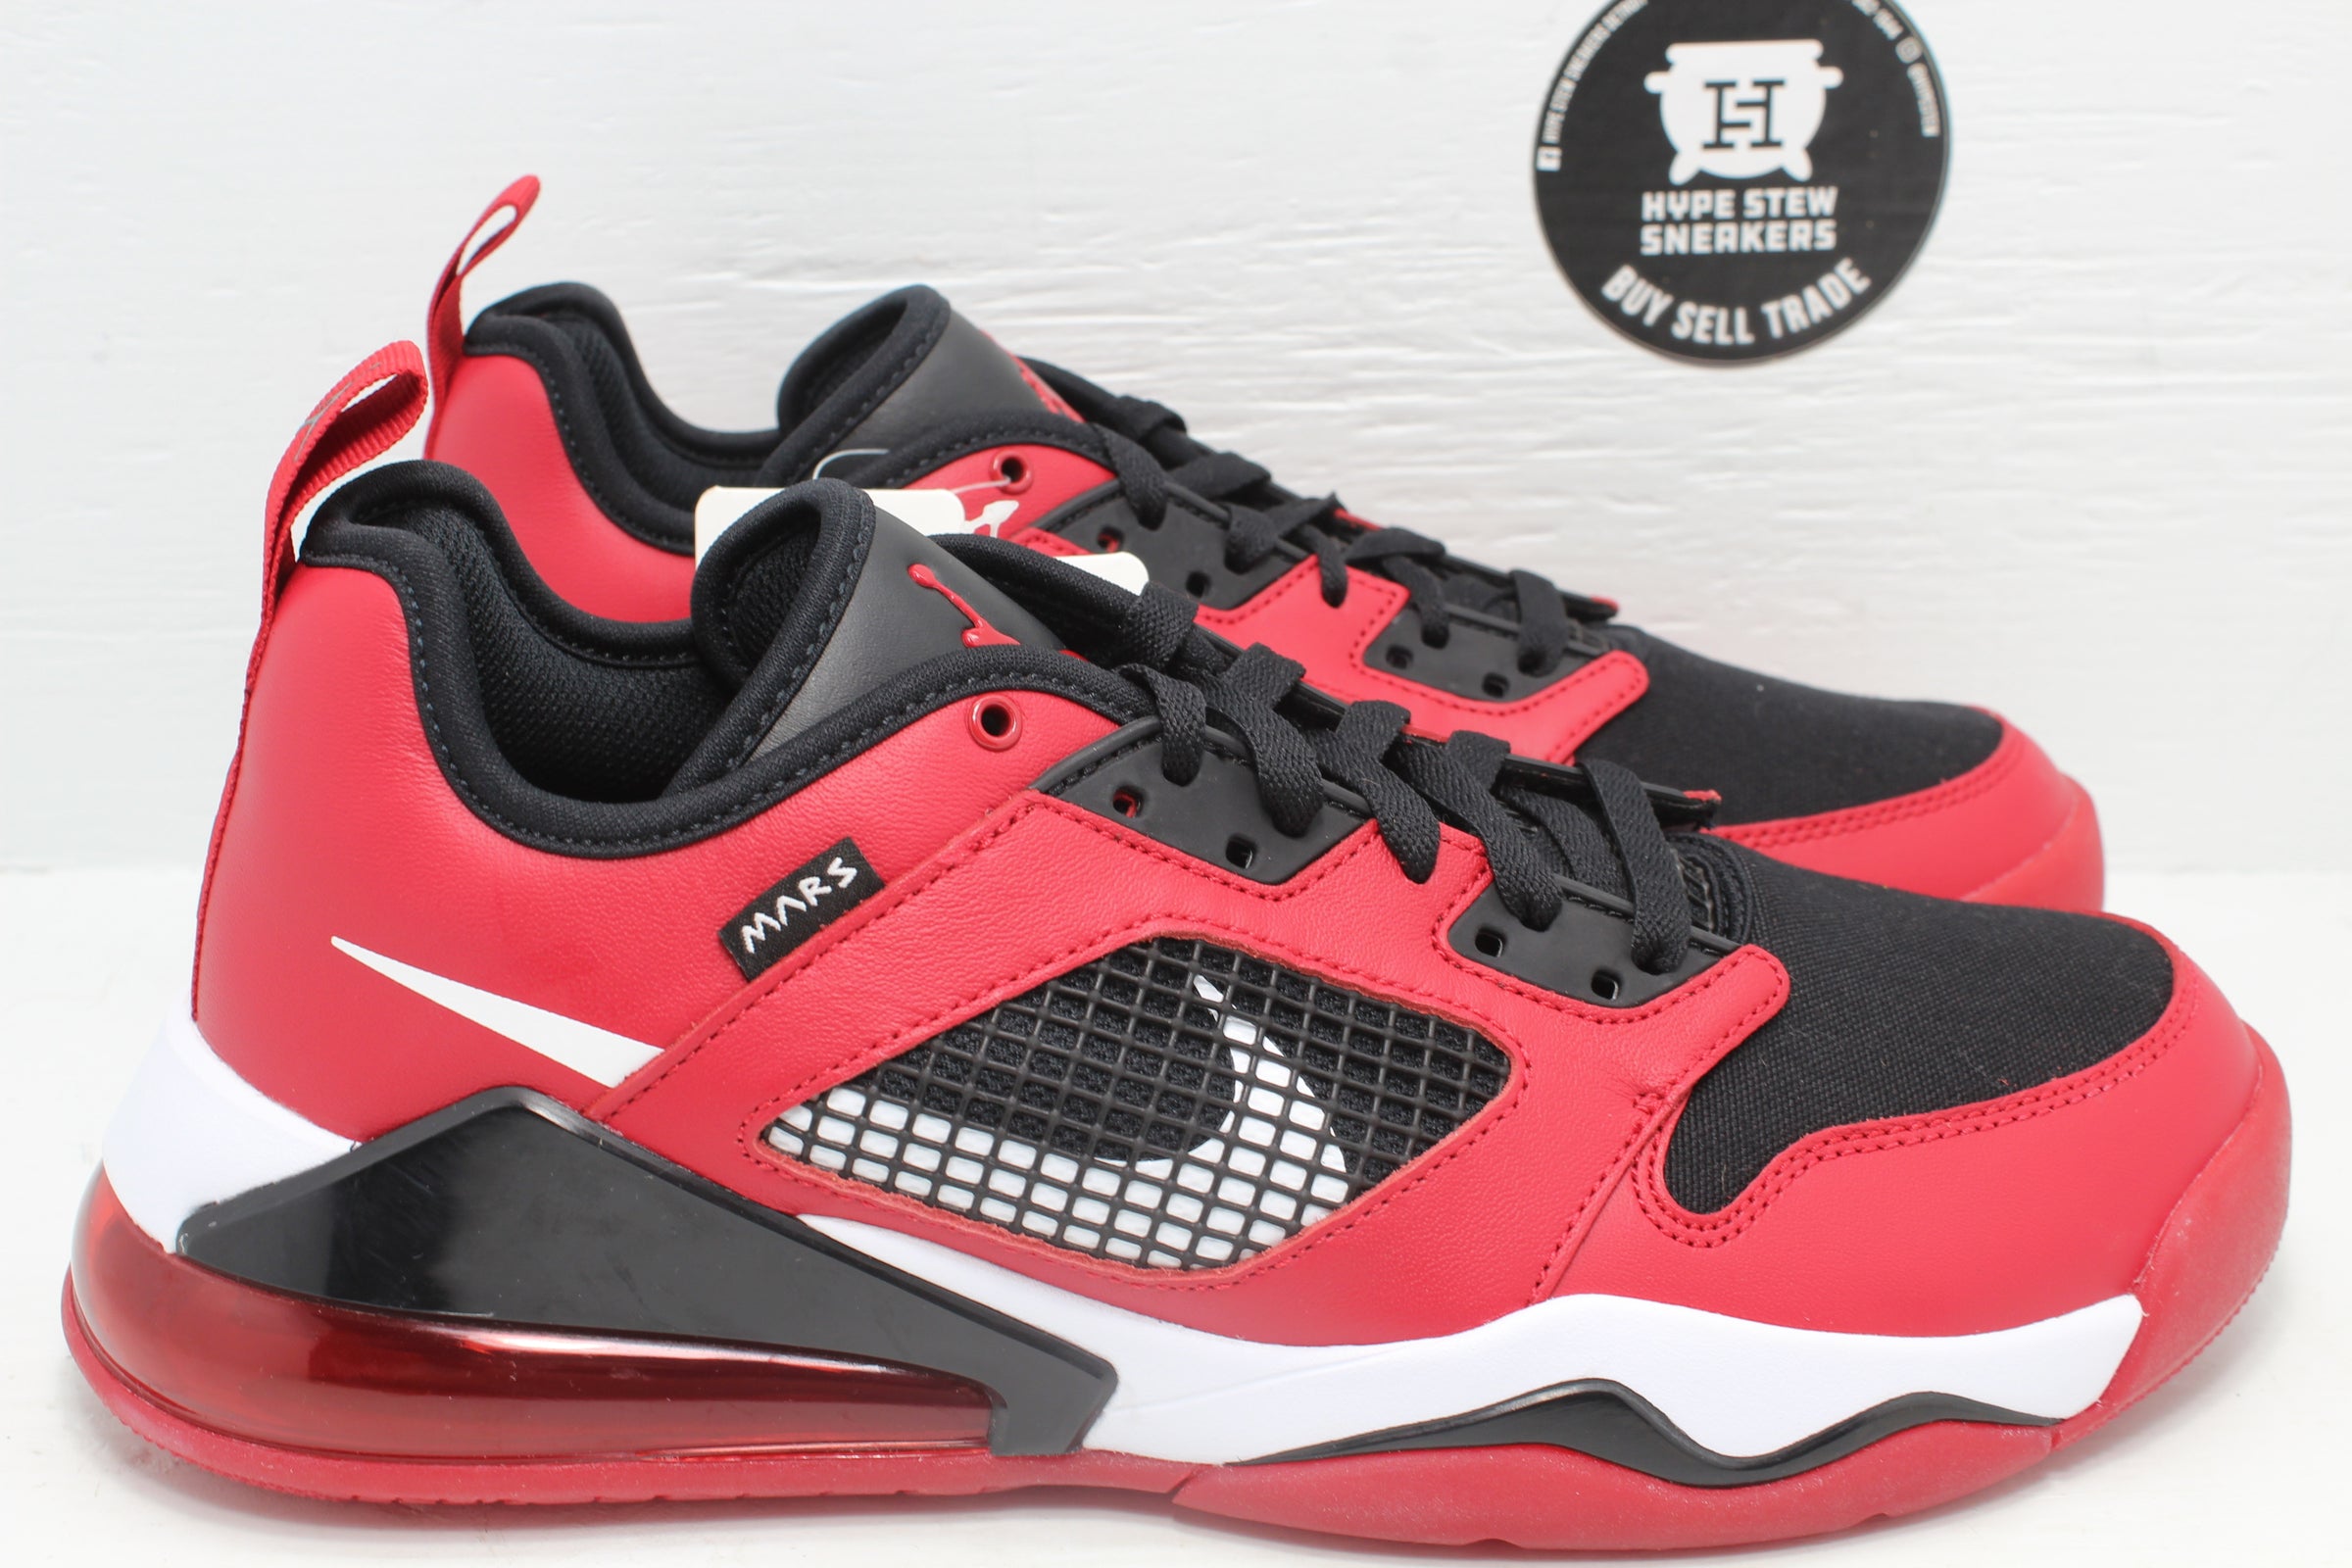 Jordan Mars 270 Red Sample | Hype Stew Sneakers Detroit